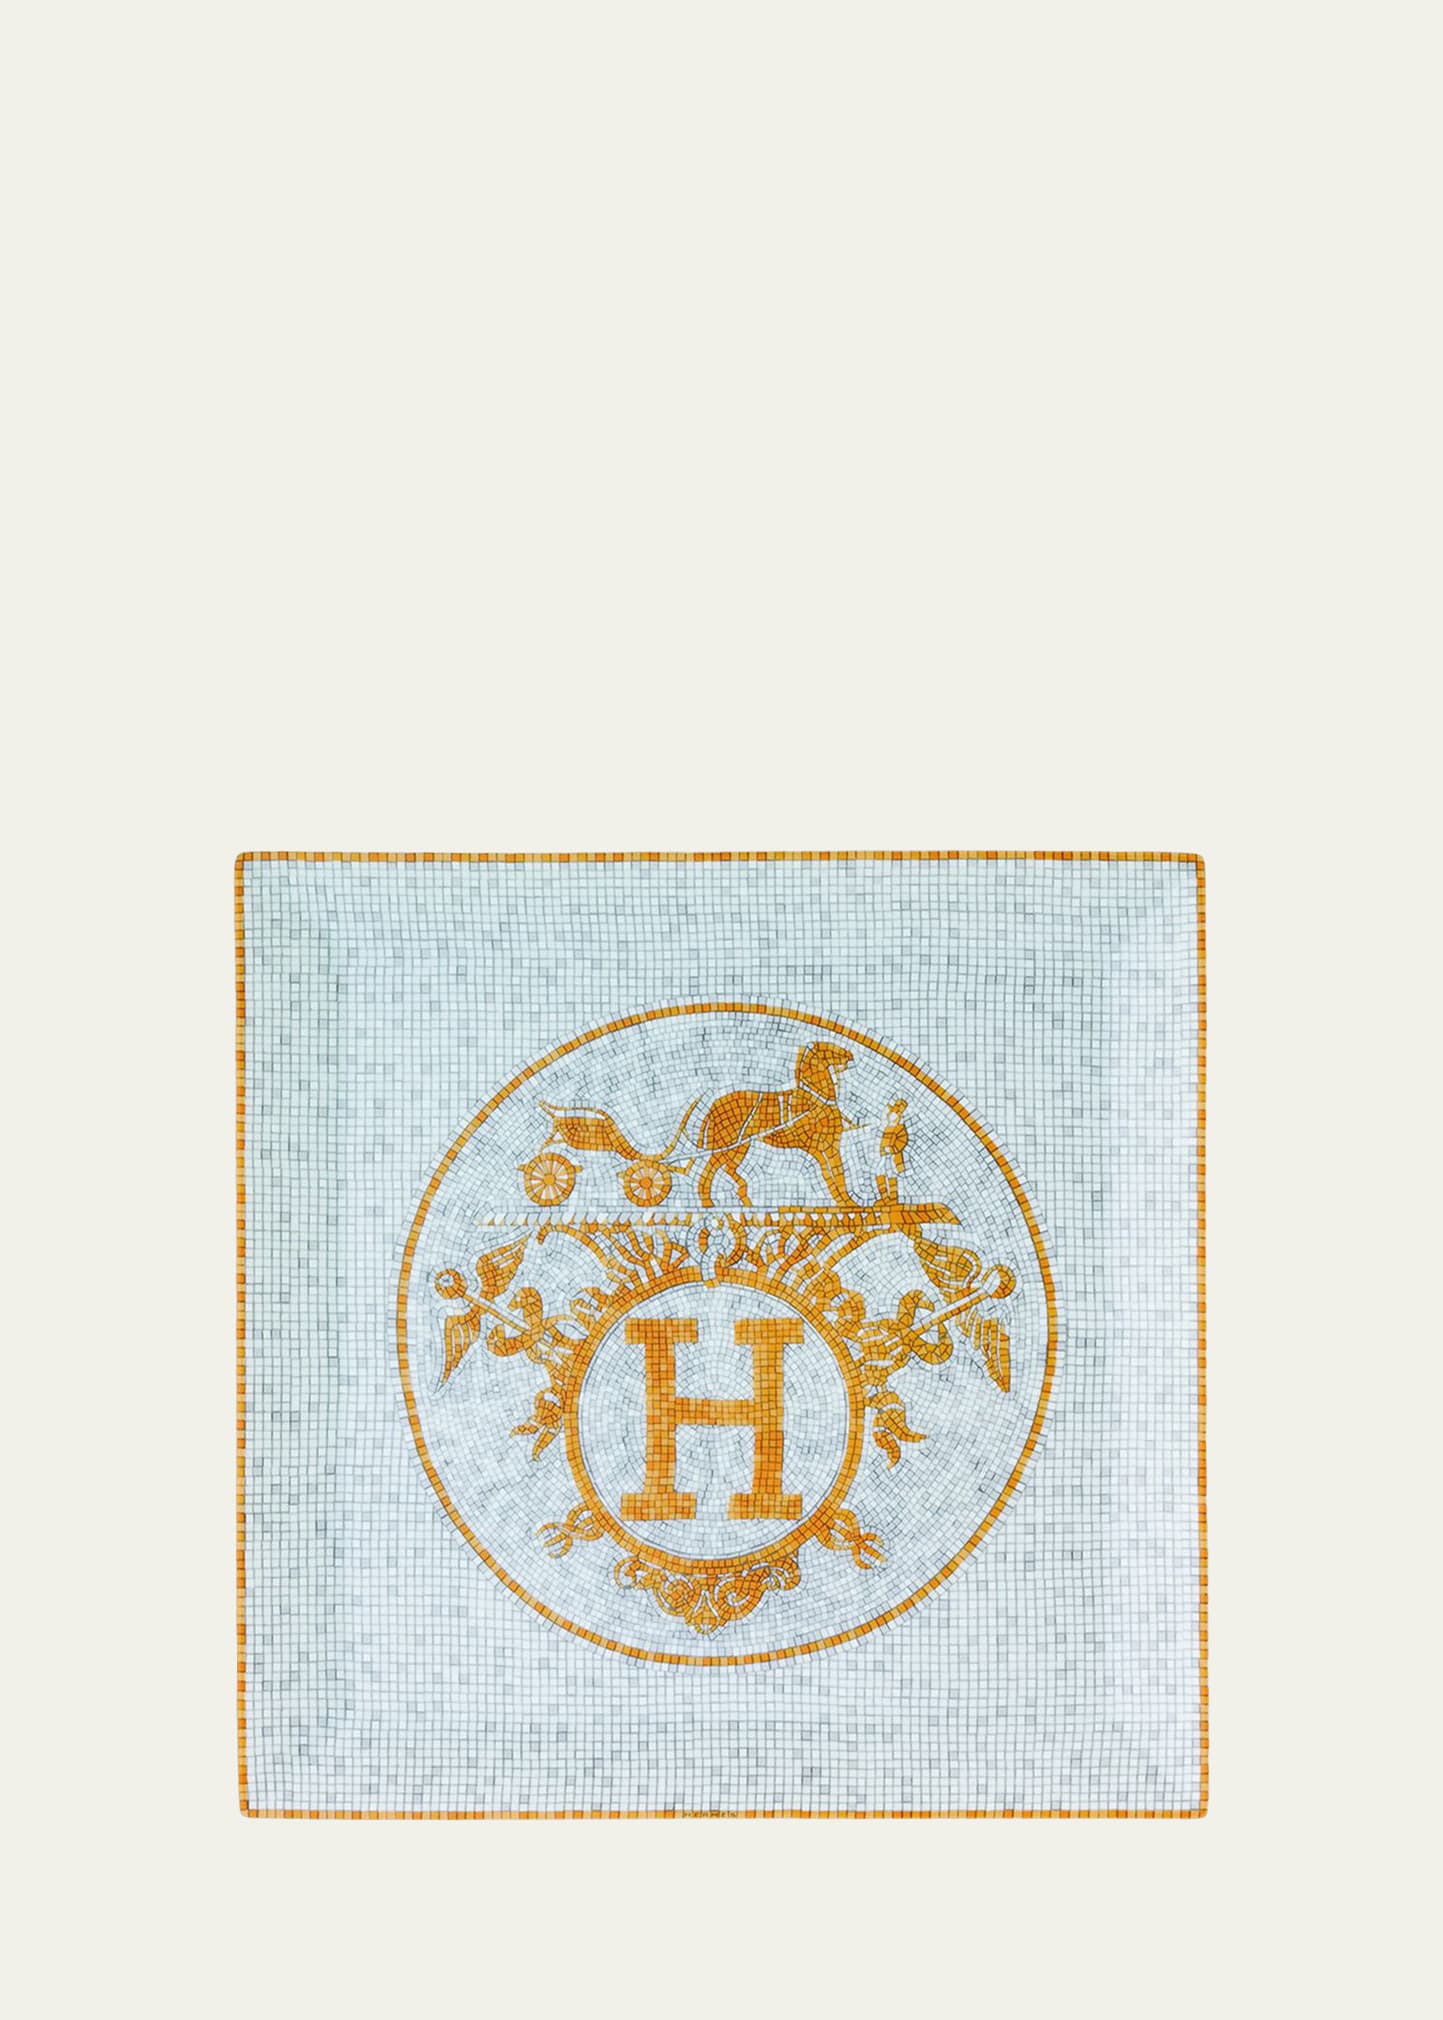 Hermès Mosaique au 24 Gold Square Plate #5